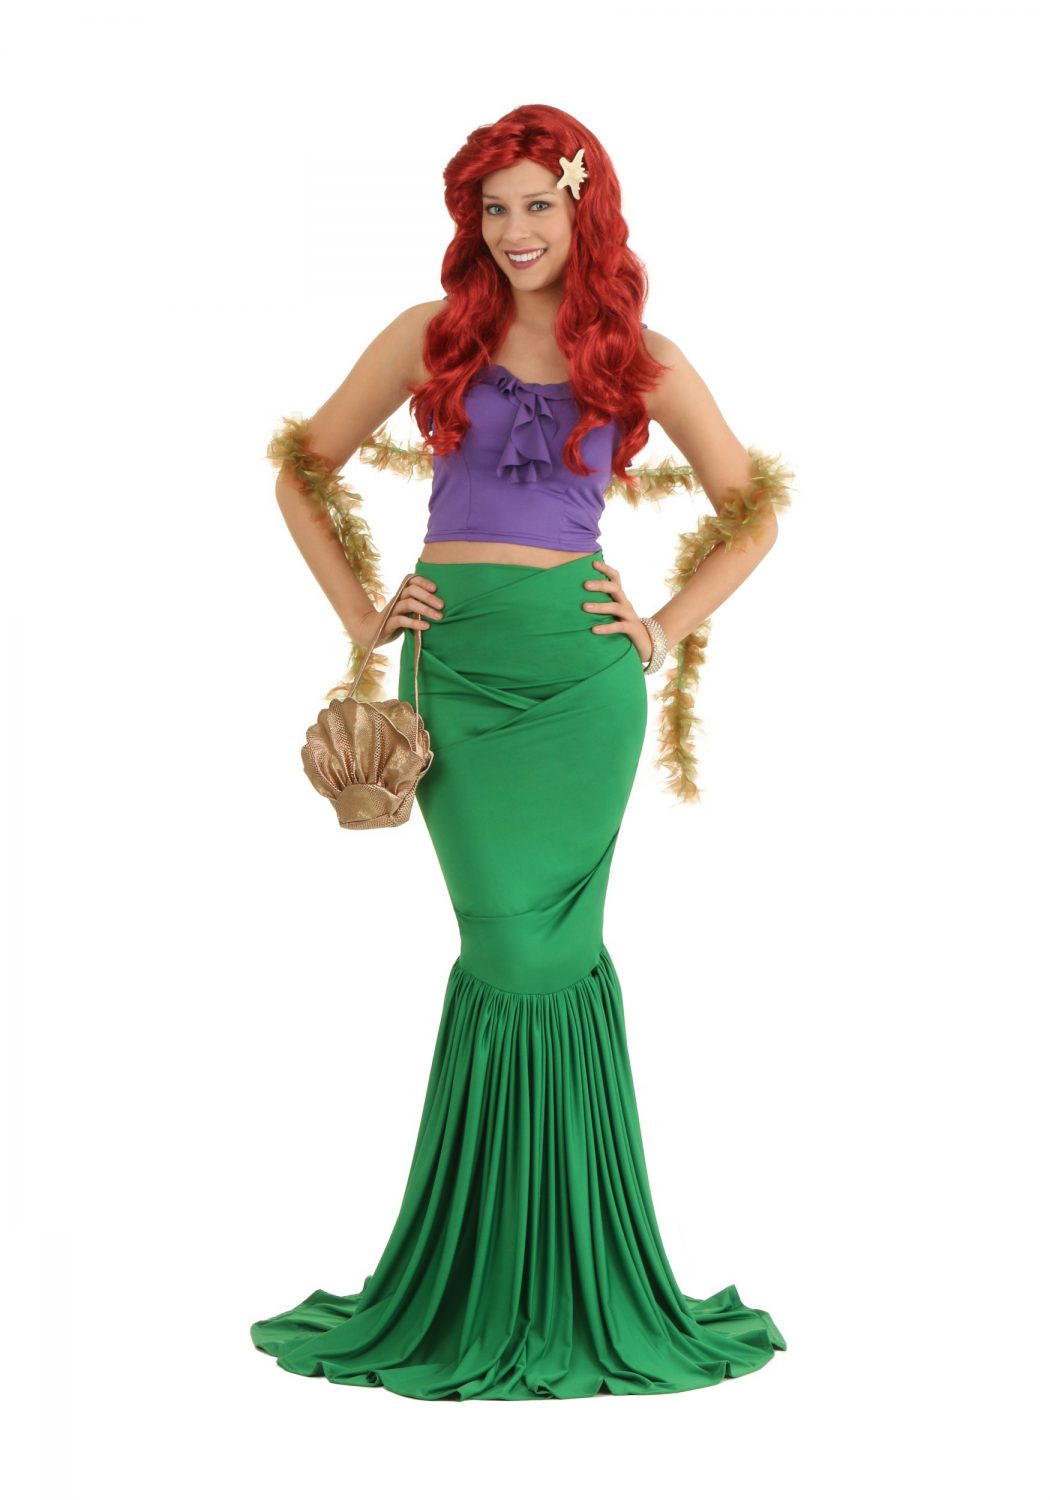 Mermaid1 Top 10 Teenagers Halloween Costumes Trends - 2